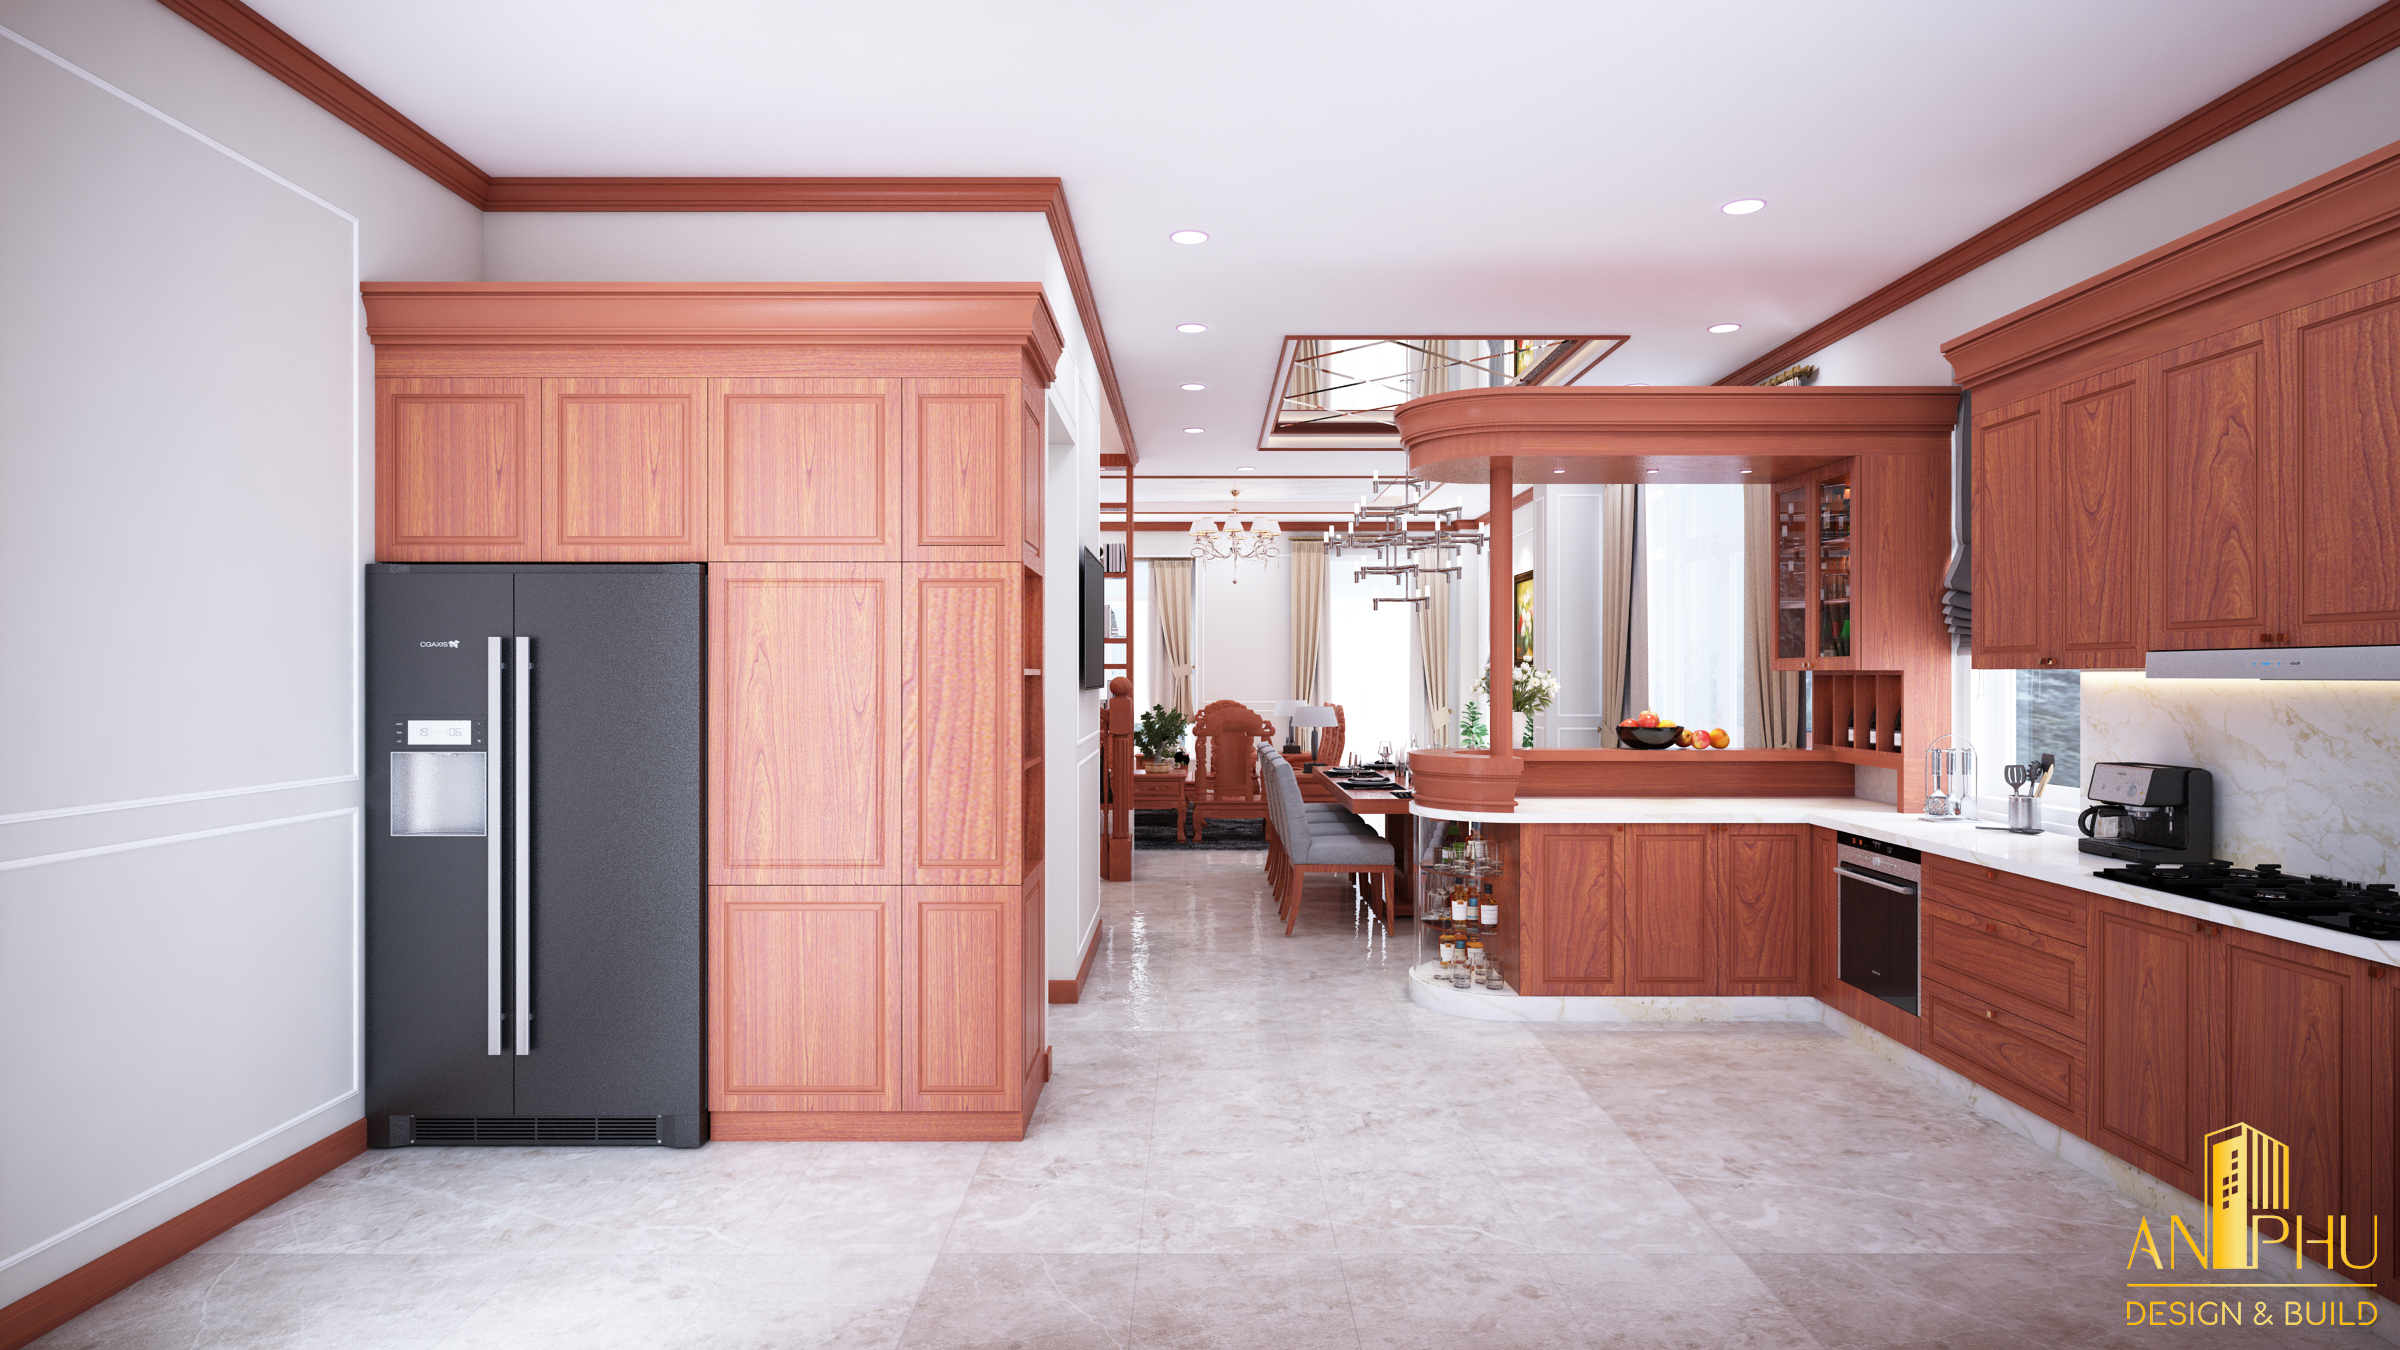 Thi công hệ tủ bếp cao đụng trần cho không gian phòng bếp thêm gọn gàng,đẹp mắt và sang trọng hơn